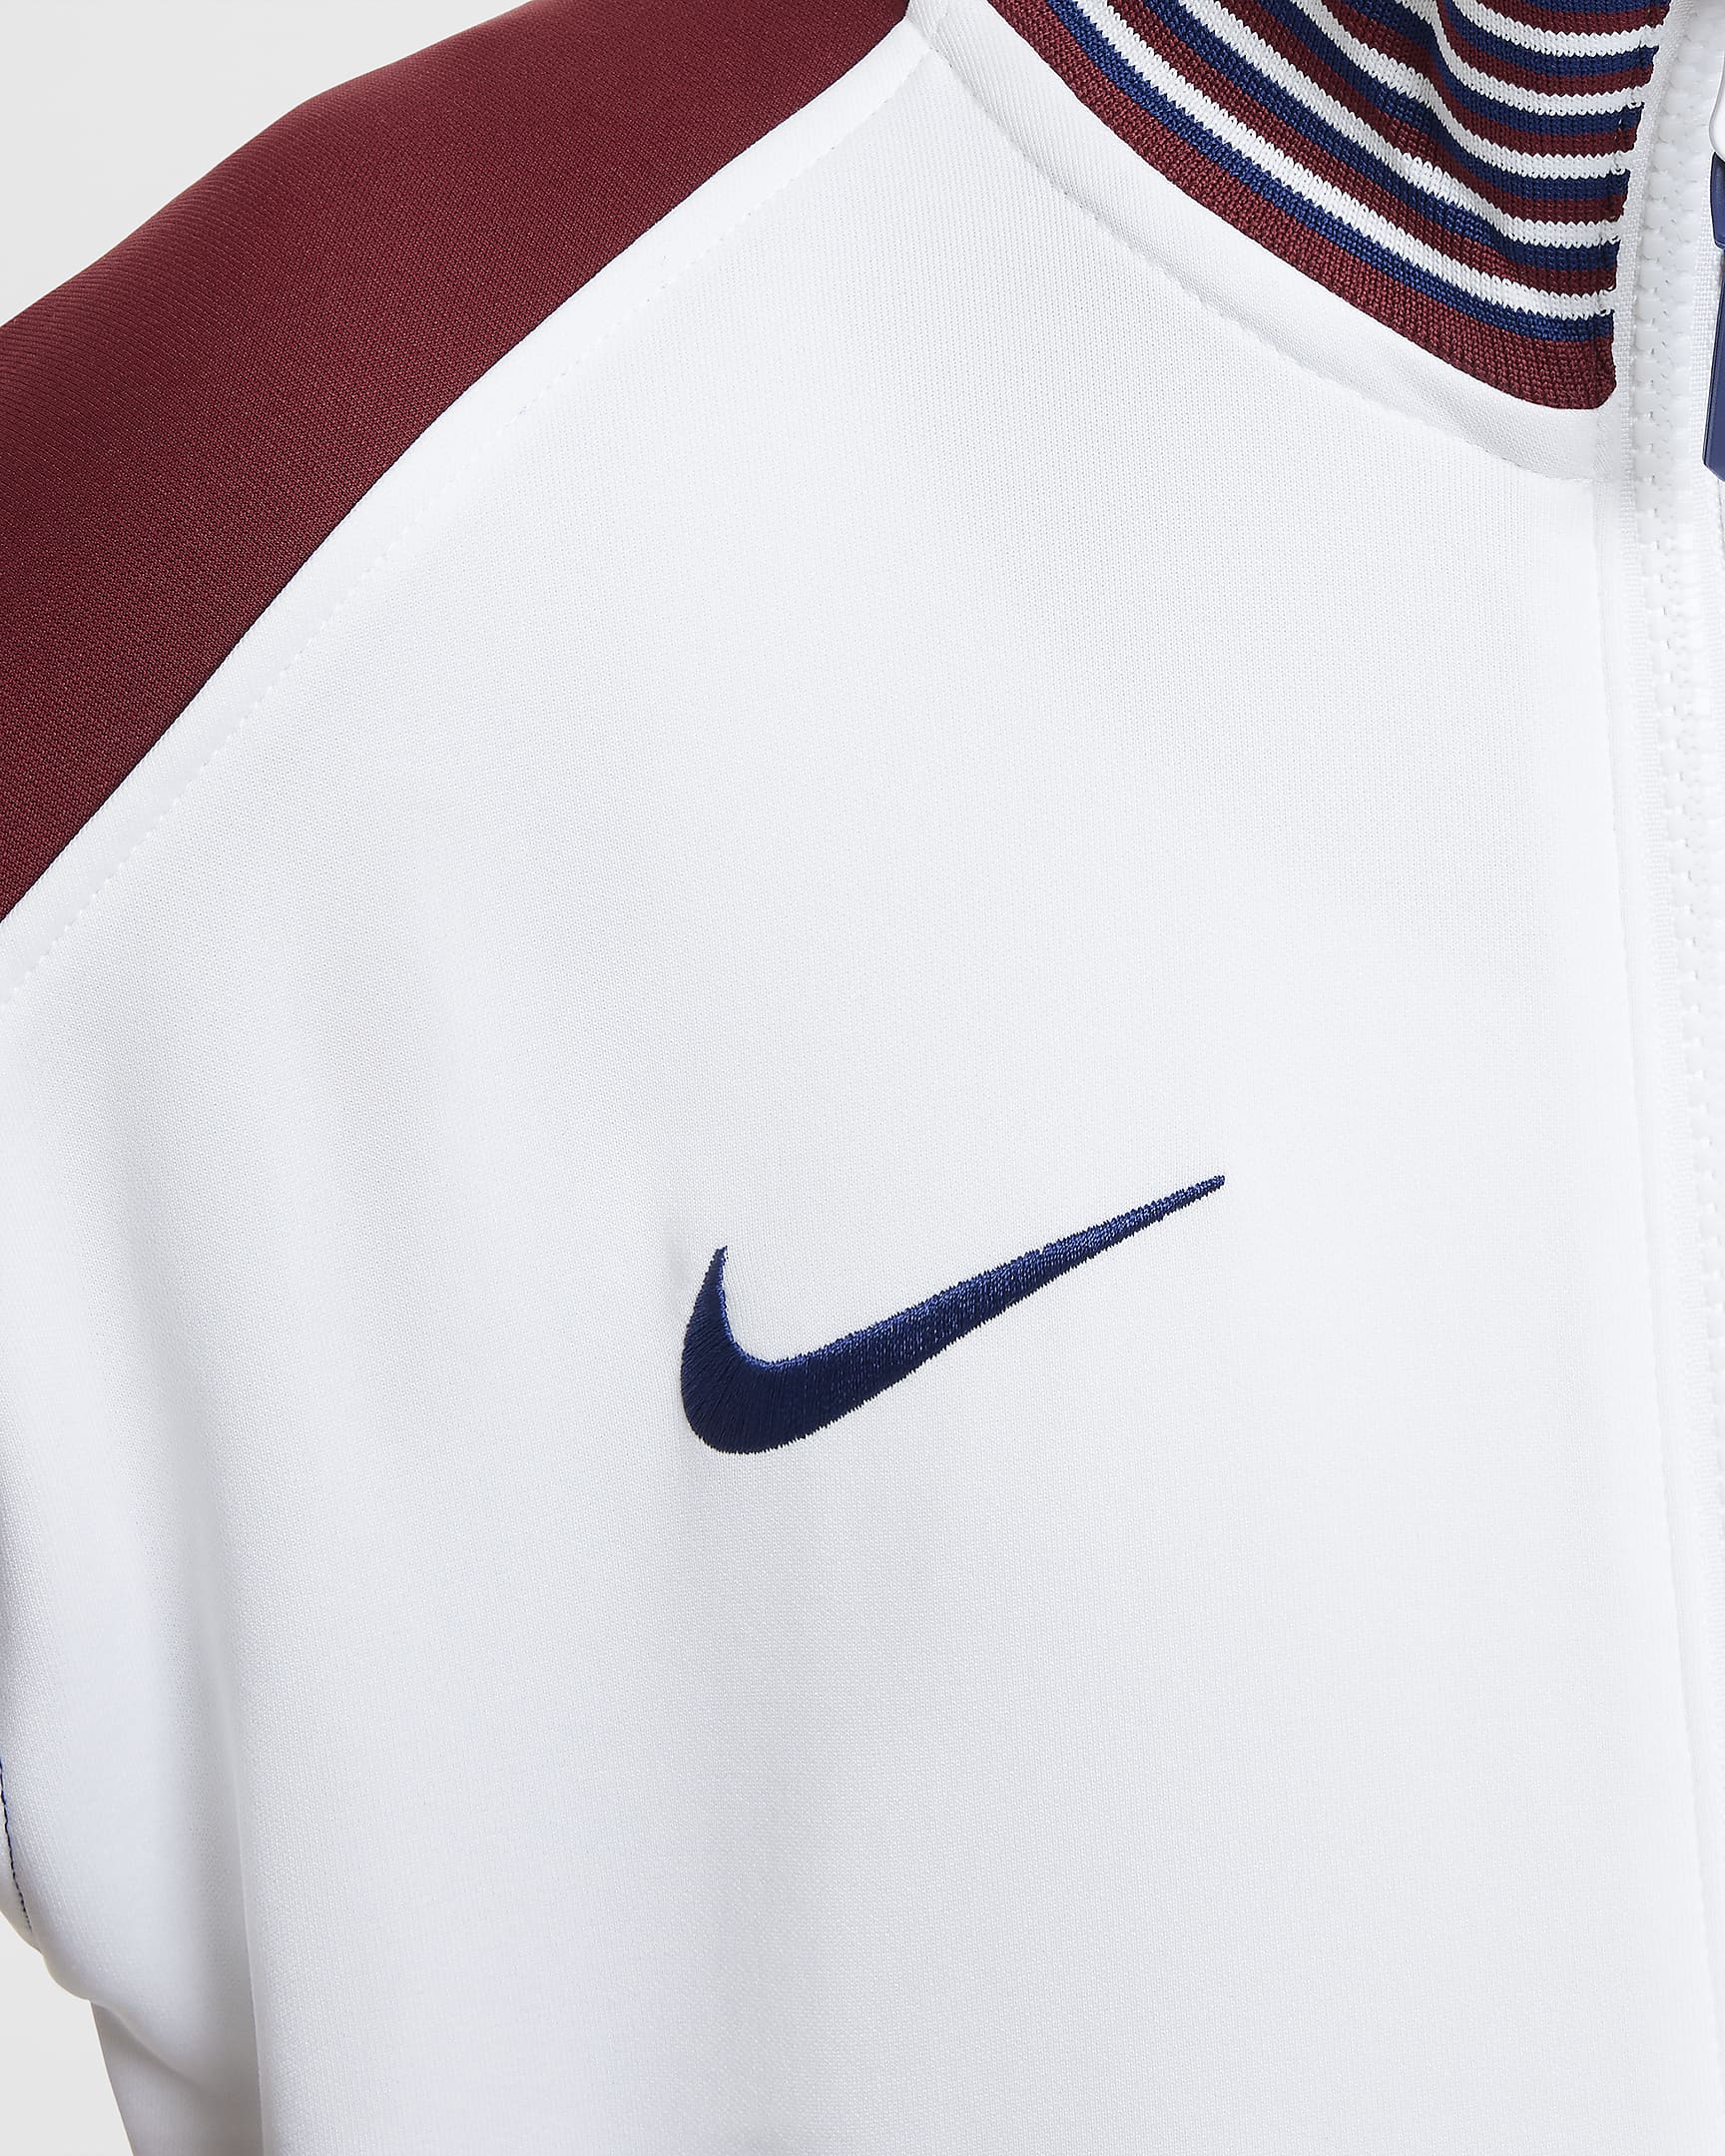 Veste de foot Nike Dri-FIT Angleterre Academy Pro Domicile pour ado - Blanc/Team Red/Blue Void